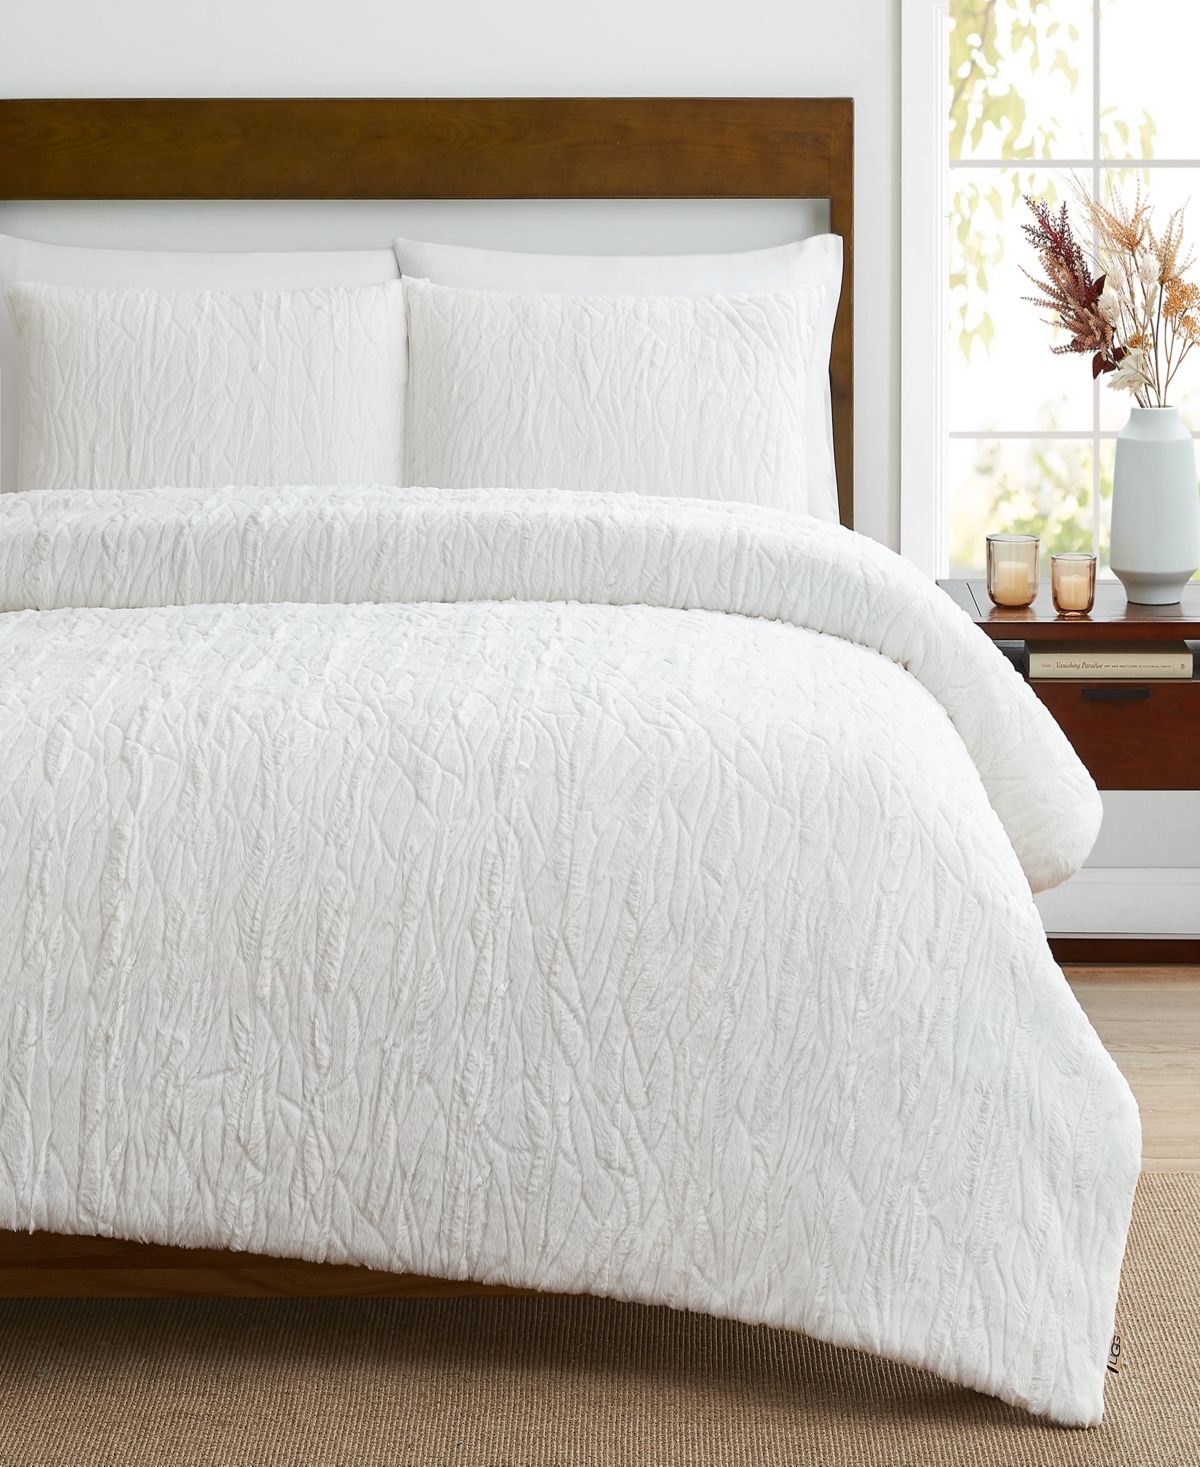 Ugg Diana Comforter Set, Queen Bedding | Macys (US)